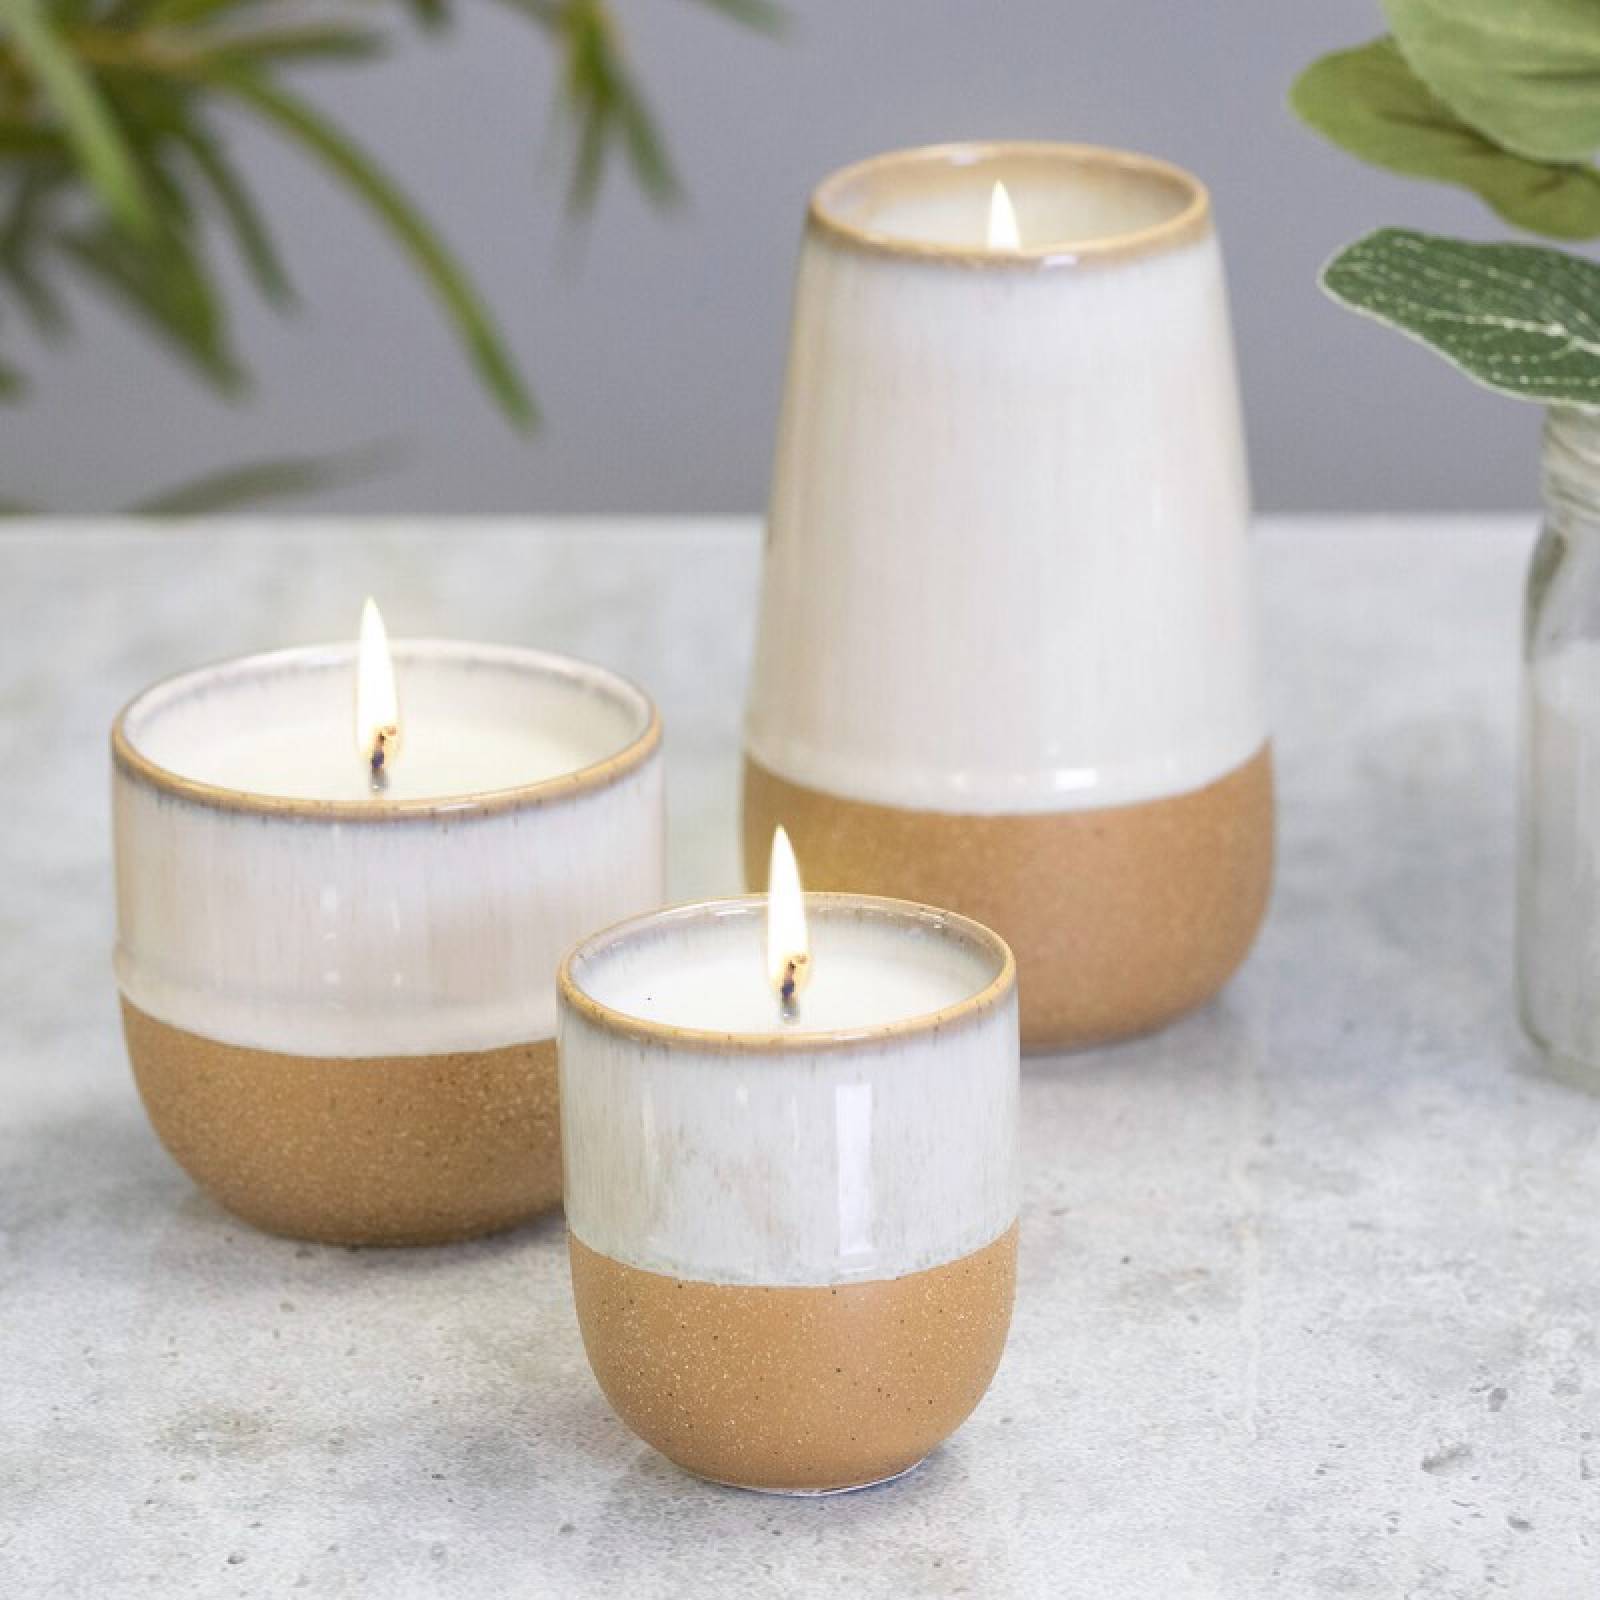 Glazed Ceramic Pot With Soy Candle - Jasmine & Bamboo 99g thumbnails